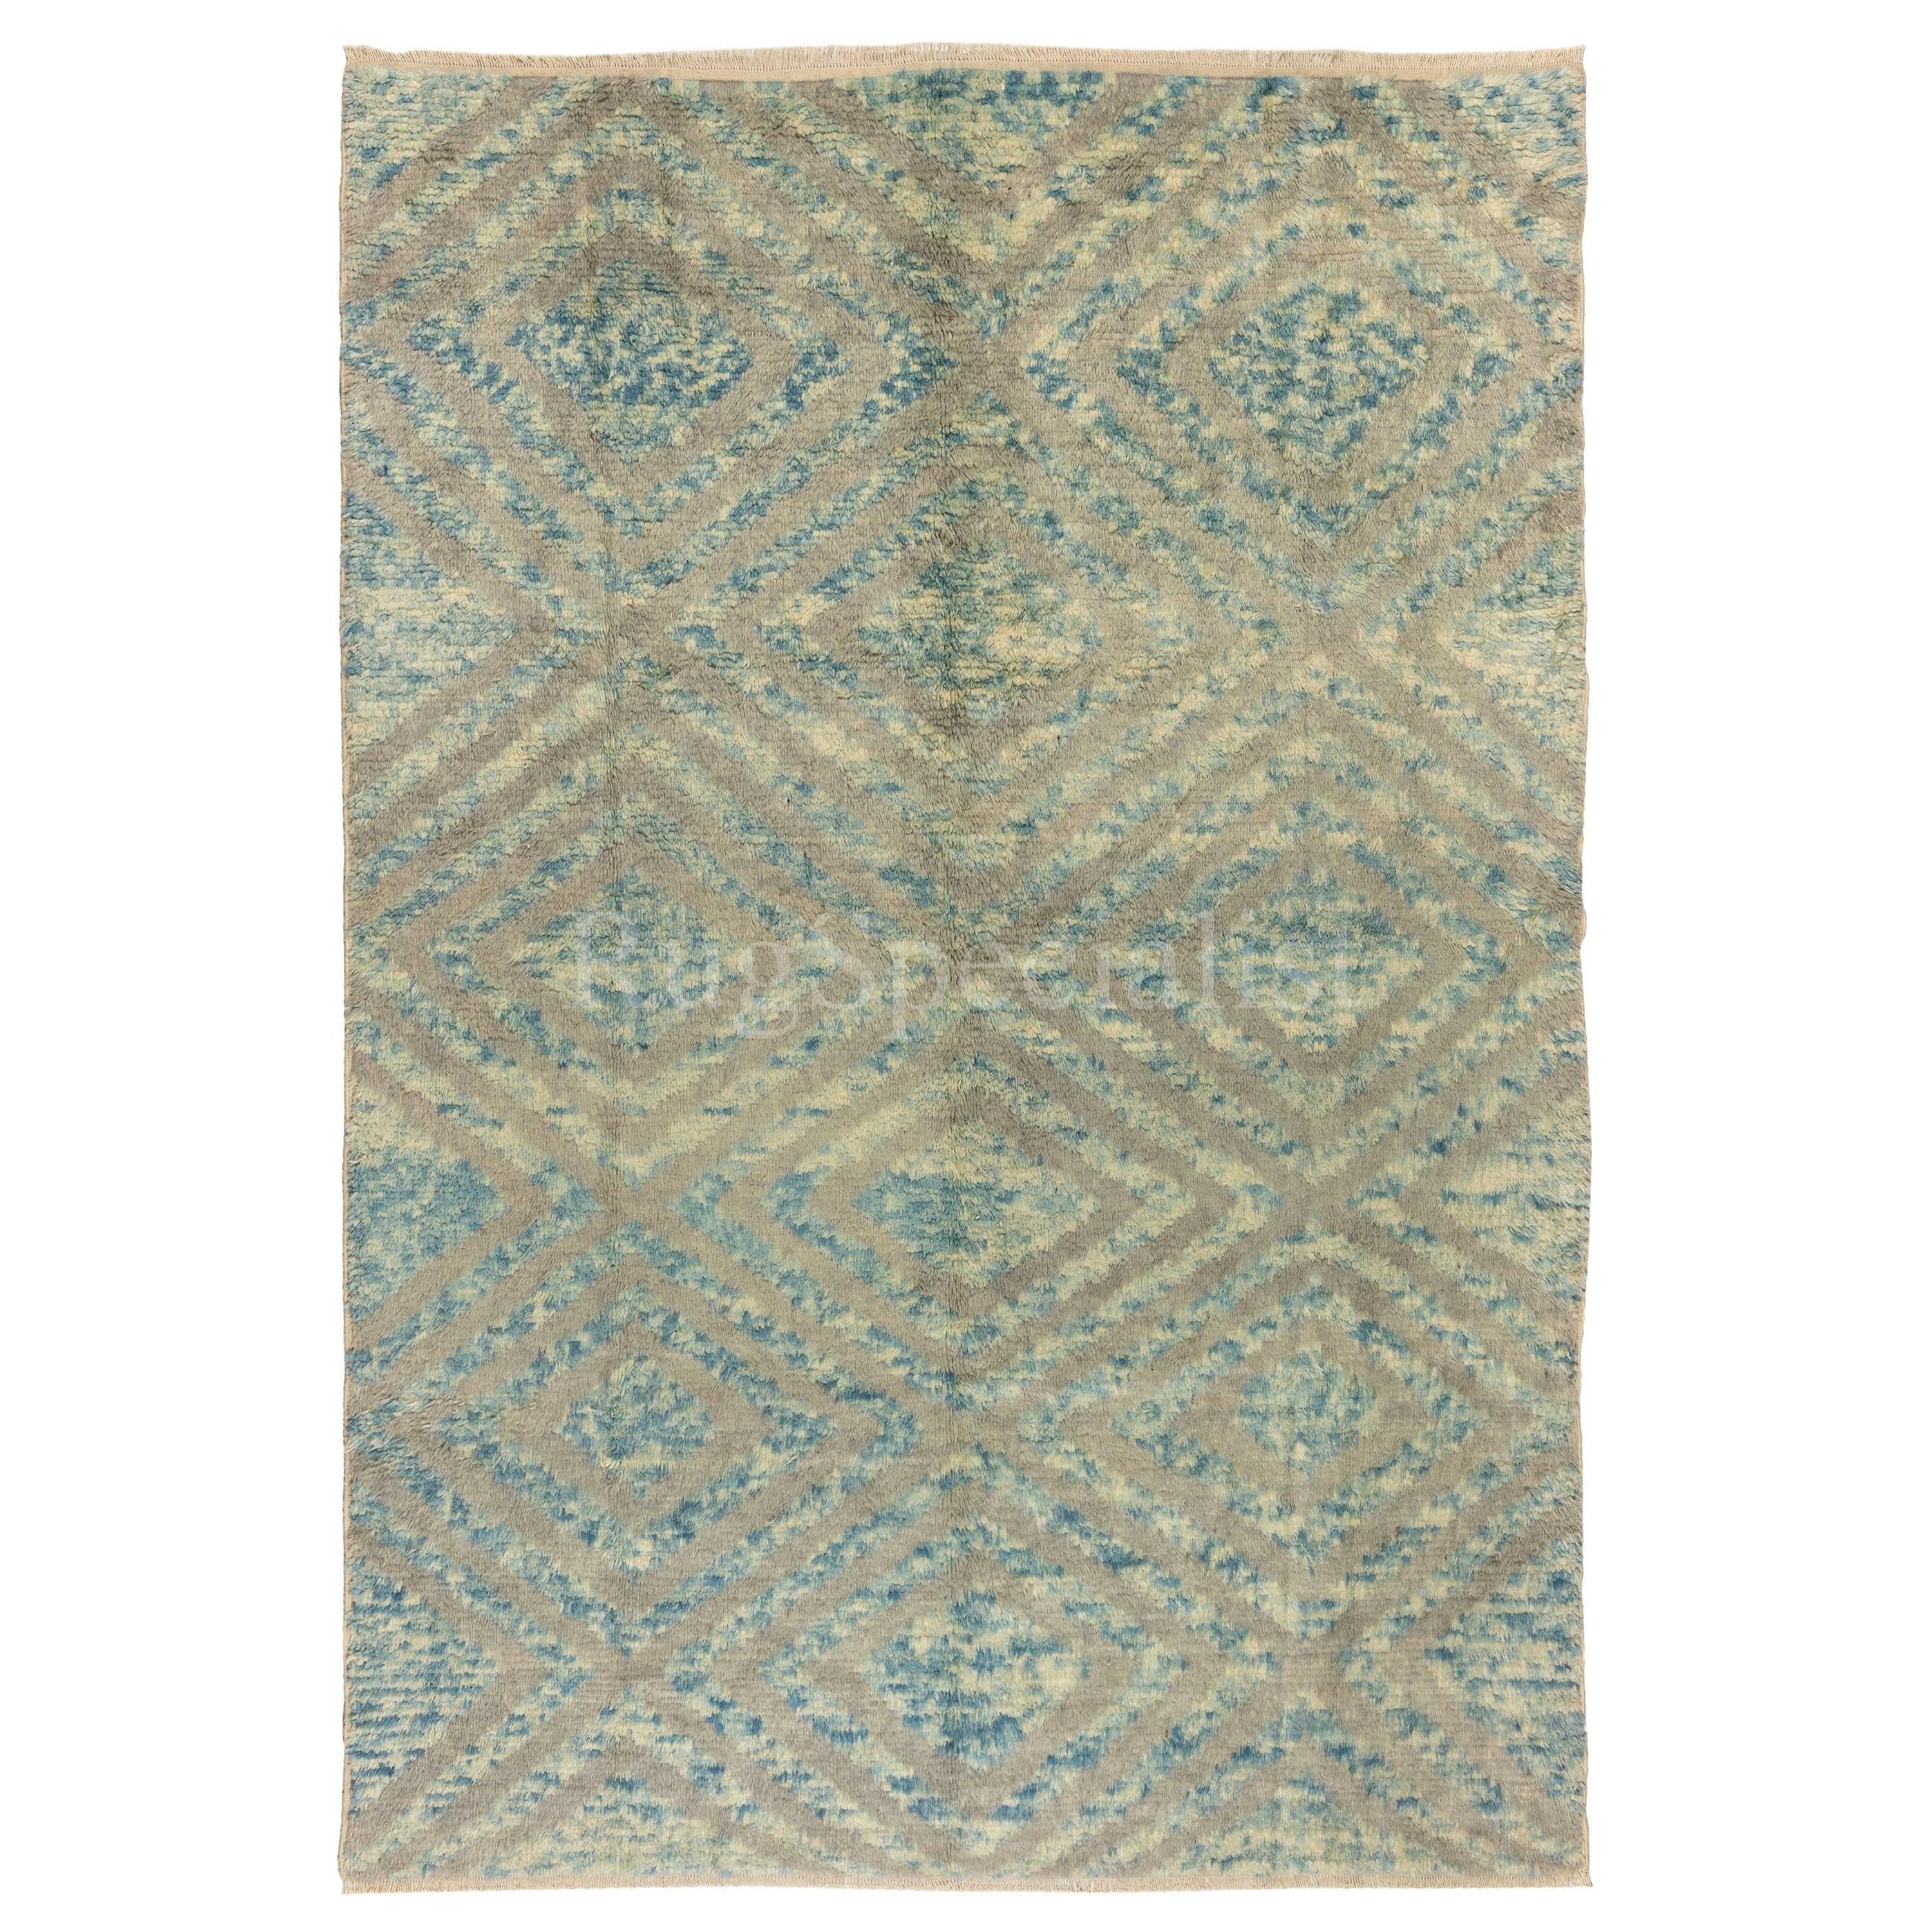 7.7x10.2 Ft maßgefertigter handgeknüpfter Teppich „Tulu“ in Blau, Grau & Beige, 100 % Wolle im Angebot